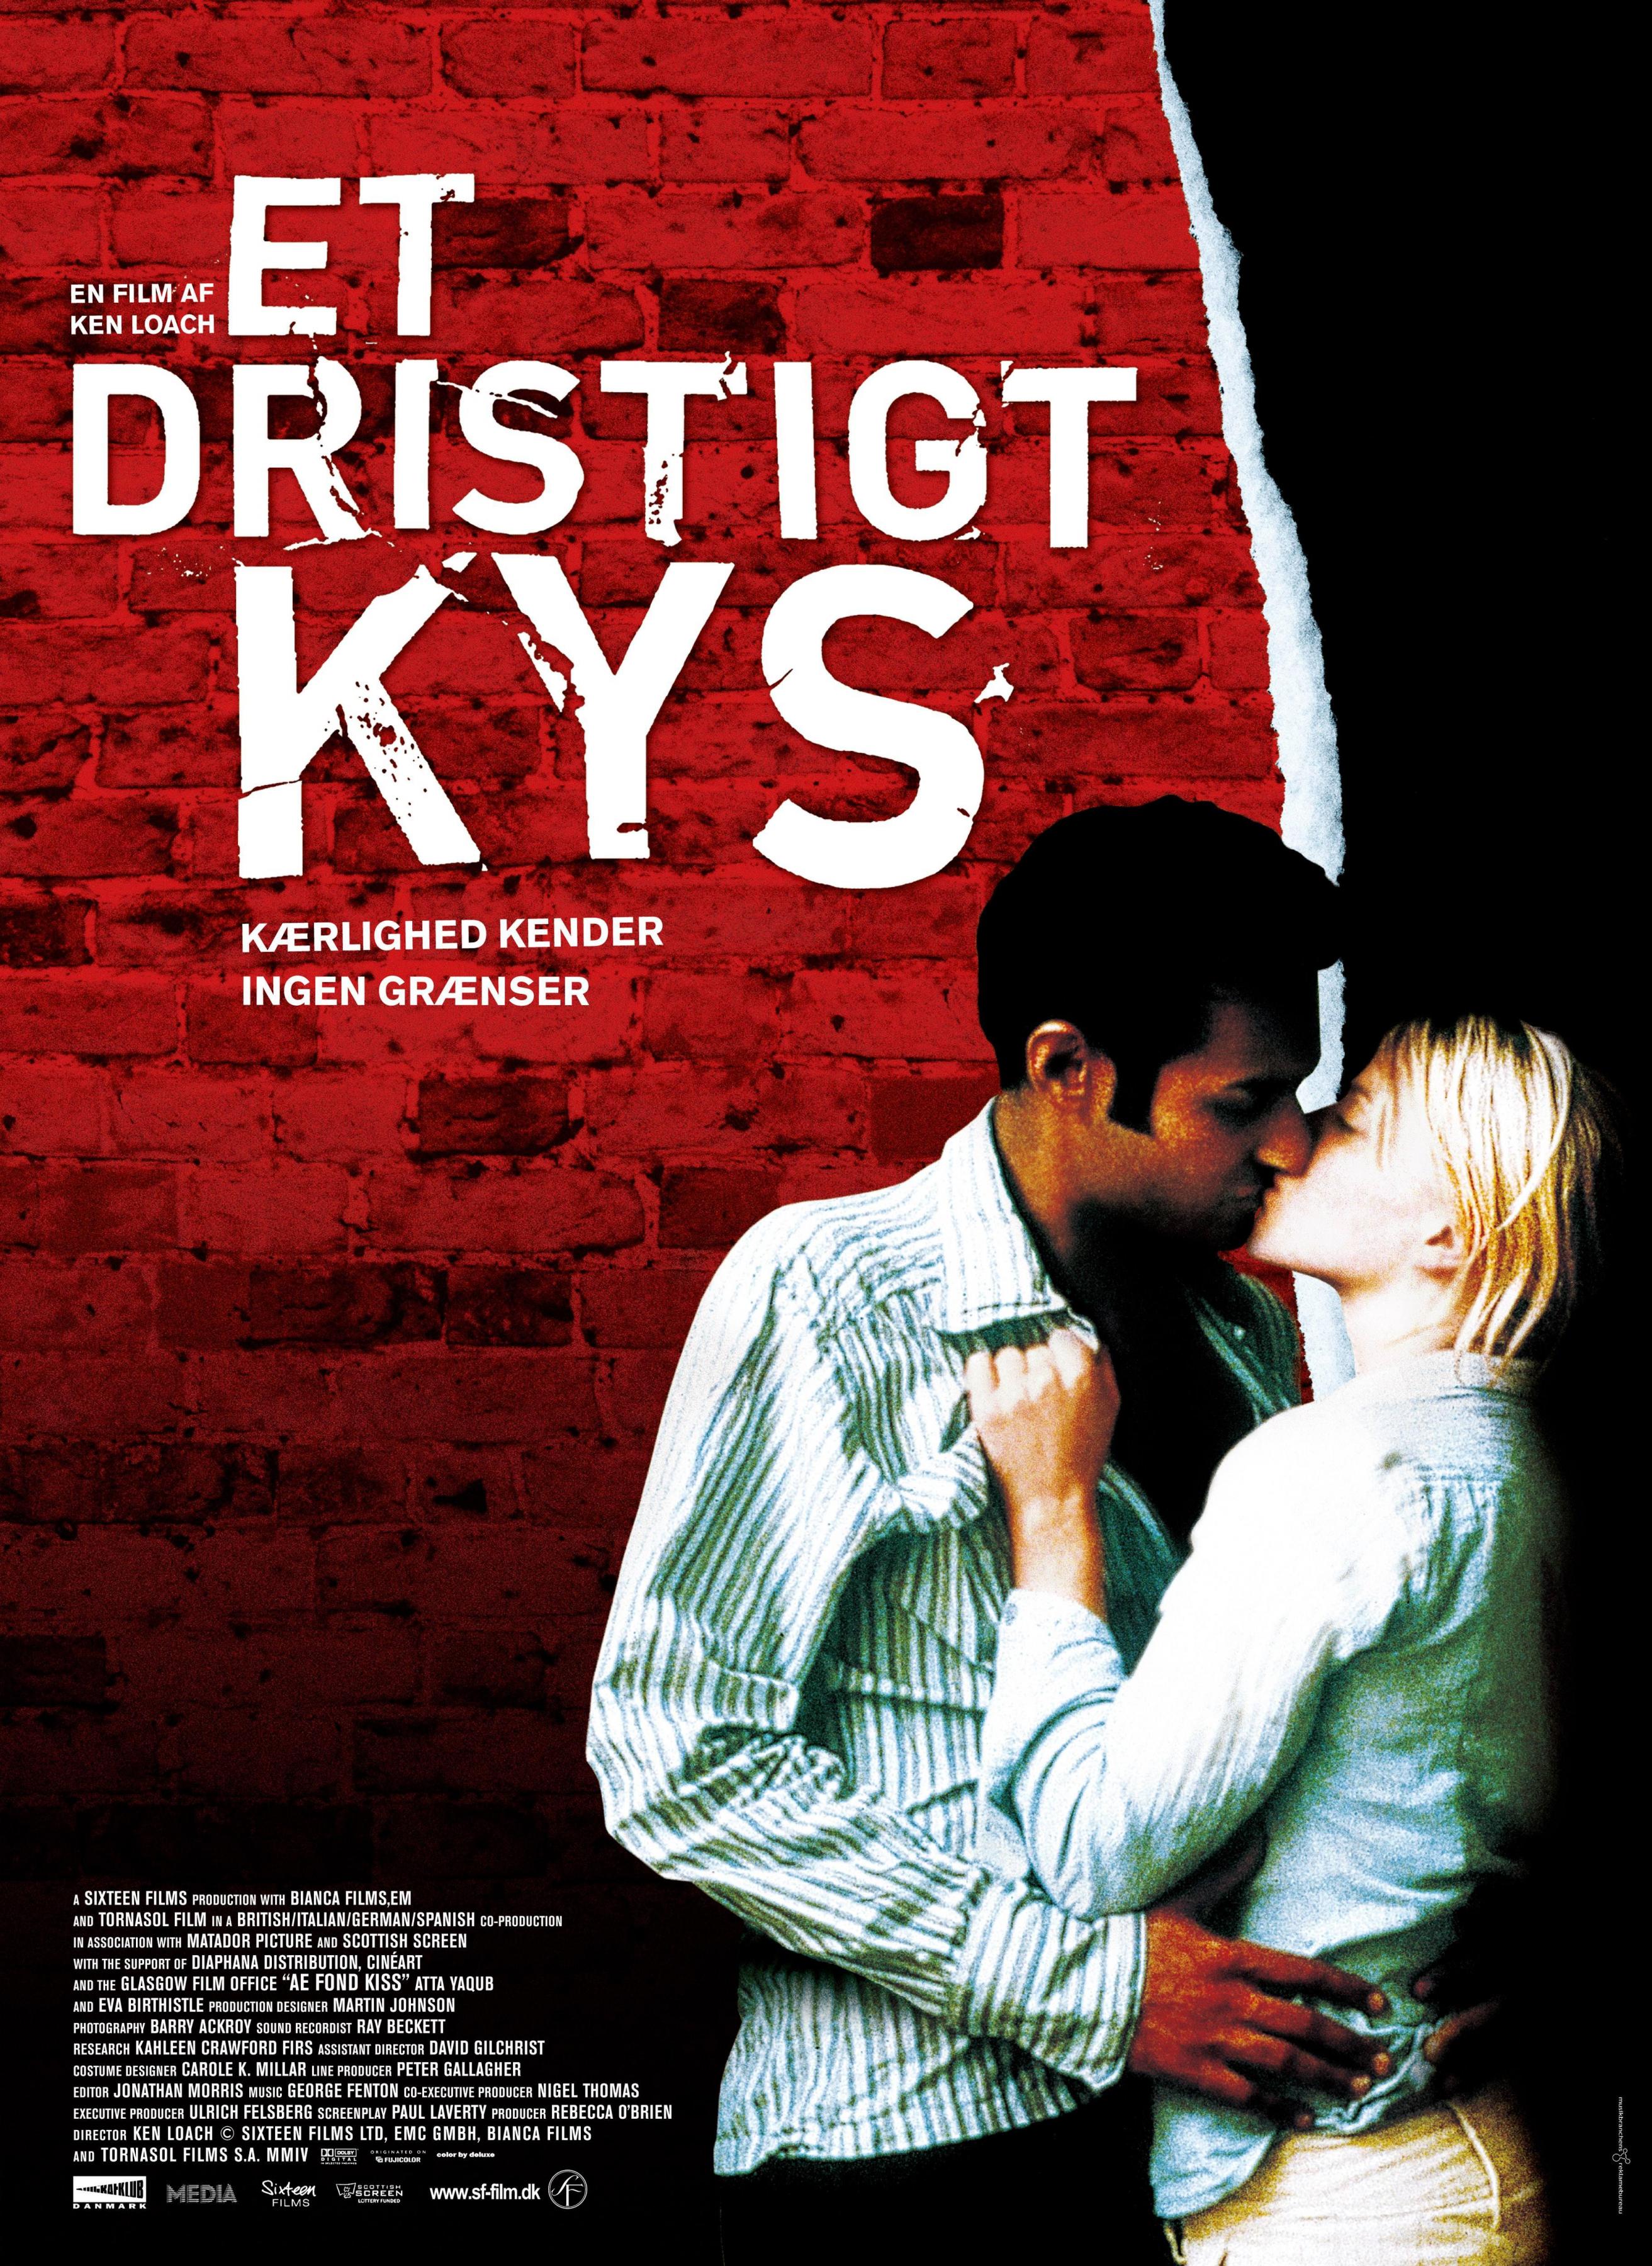 Постер фильма Последний поцелуй | Fond Kiss..., Ae